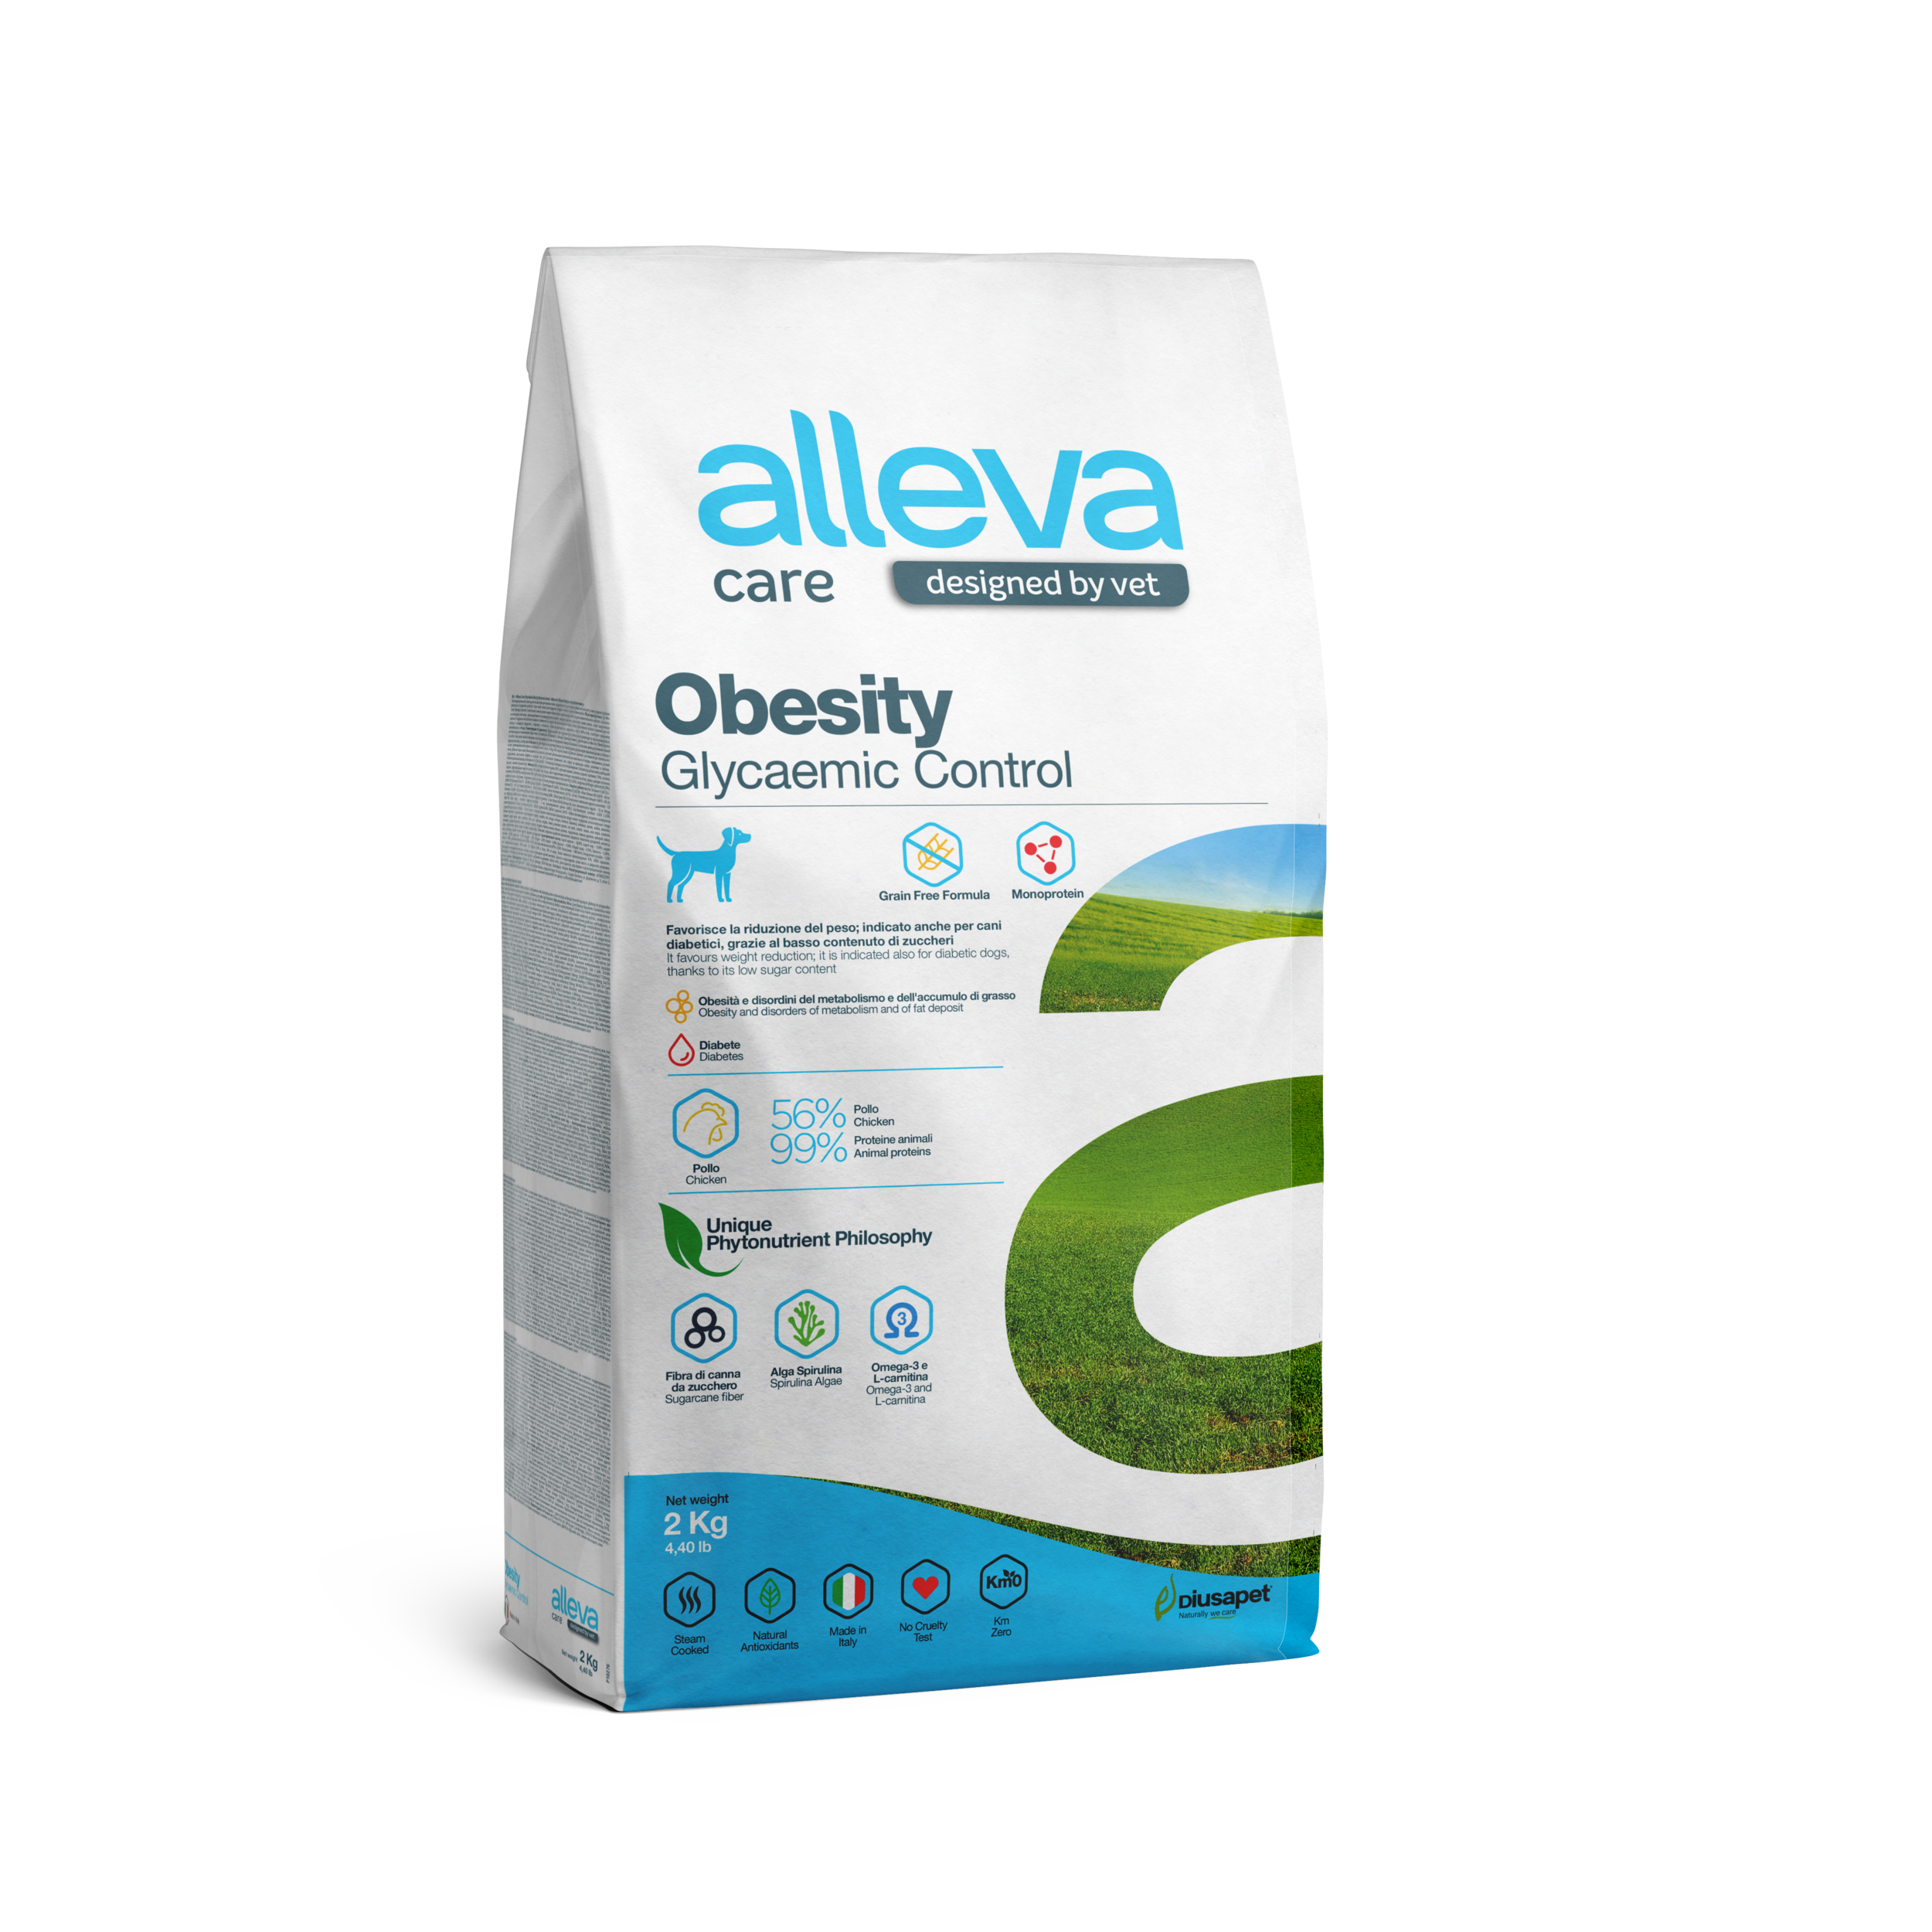 корм для собак "alleva care obesity glycemic control" (аллева кэр обесити контроль потребления глюкозы) для снижения избыточной массы тела